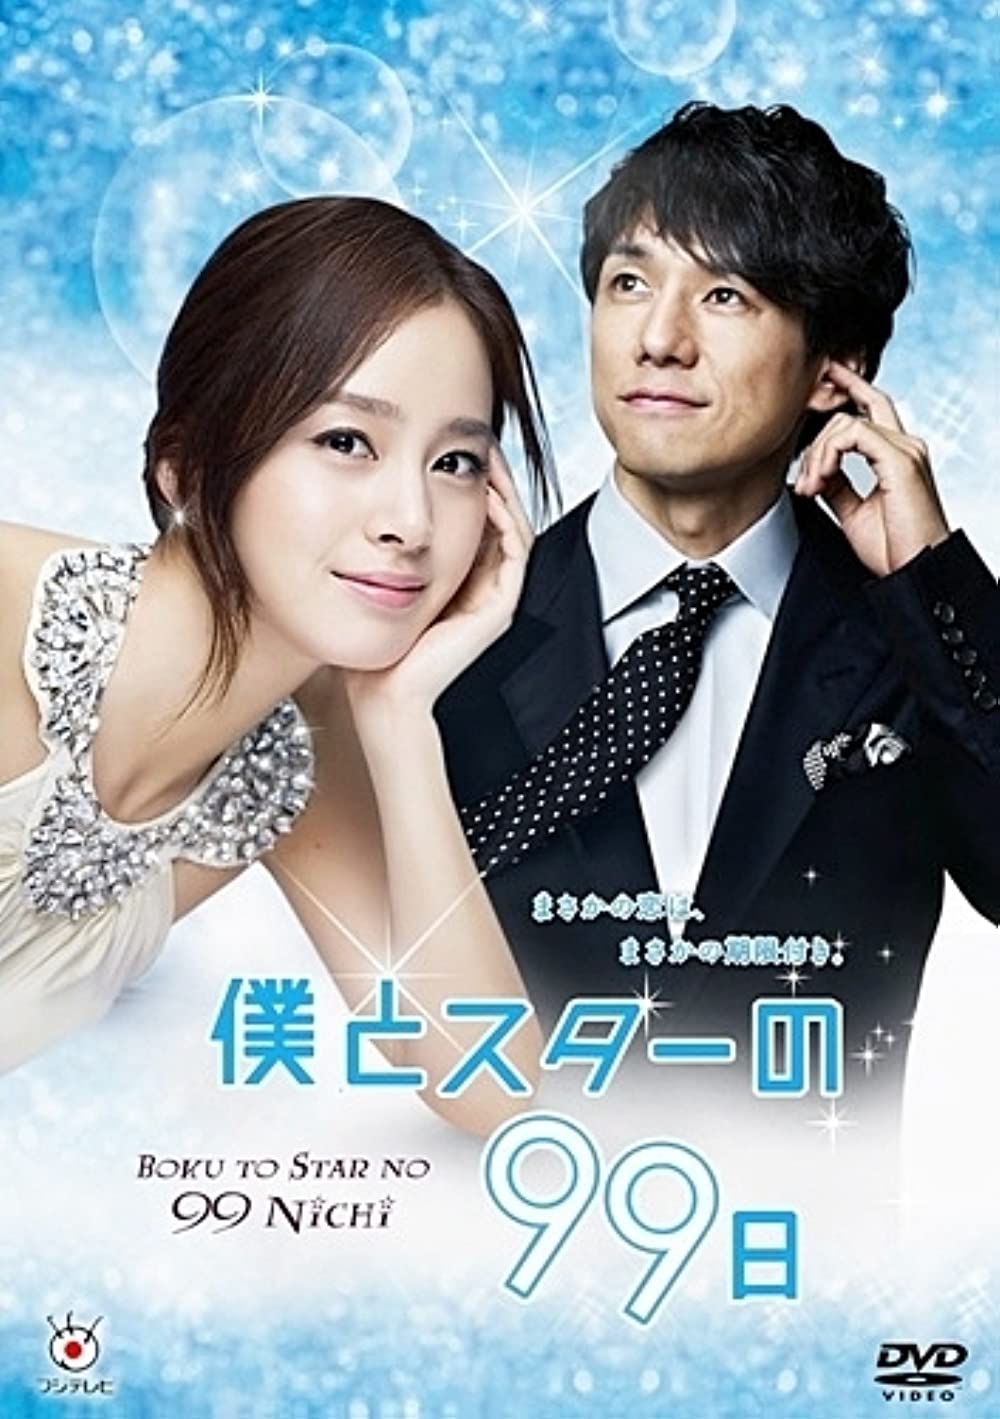 Kim Tae Hee đóng những phim gì? 99 ngày với ngôi sao - Boku to star no 99 nichi (2011)